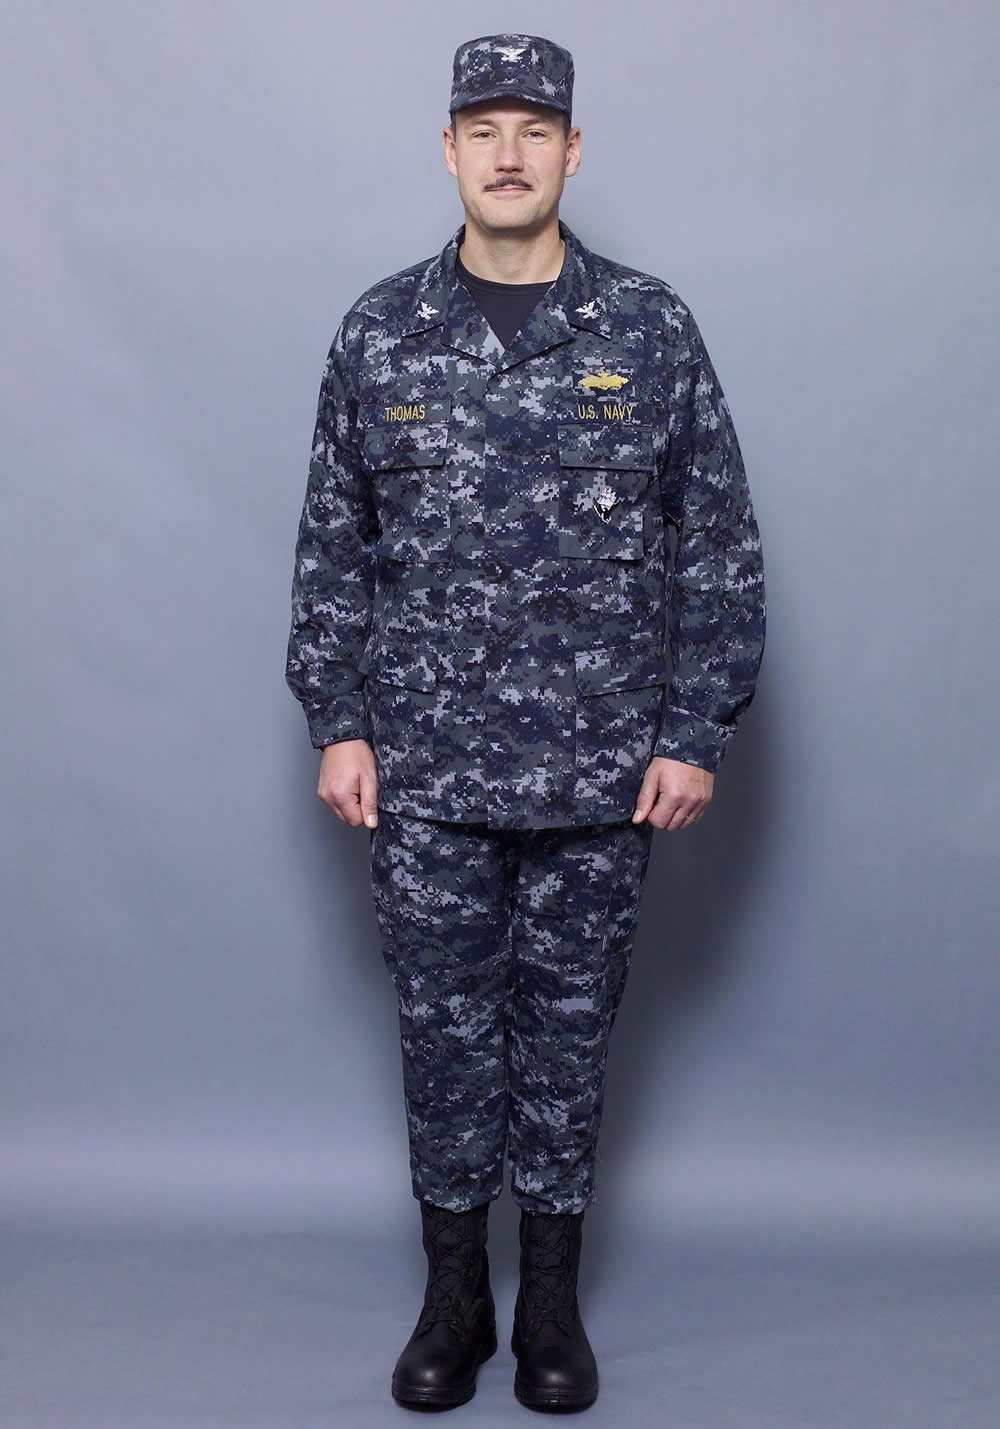 Naval Work Uniform survivability? info